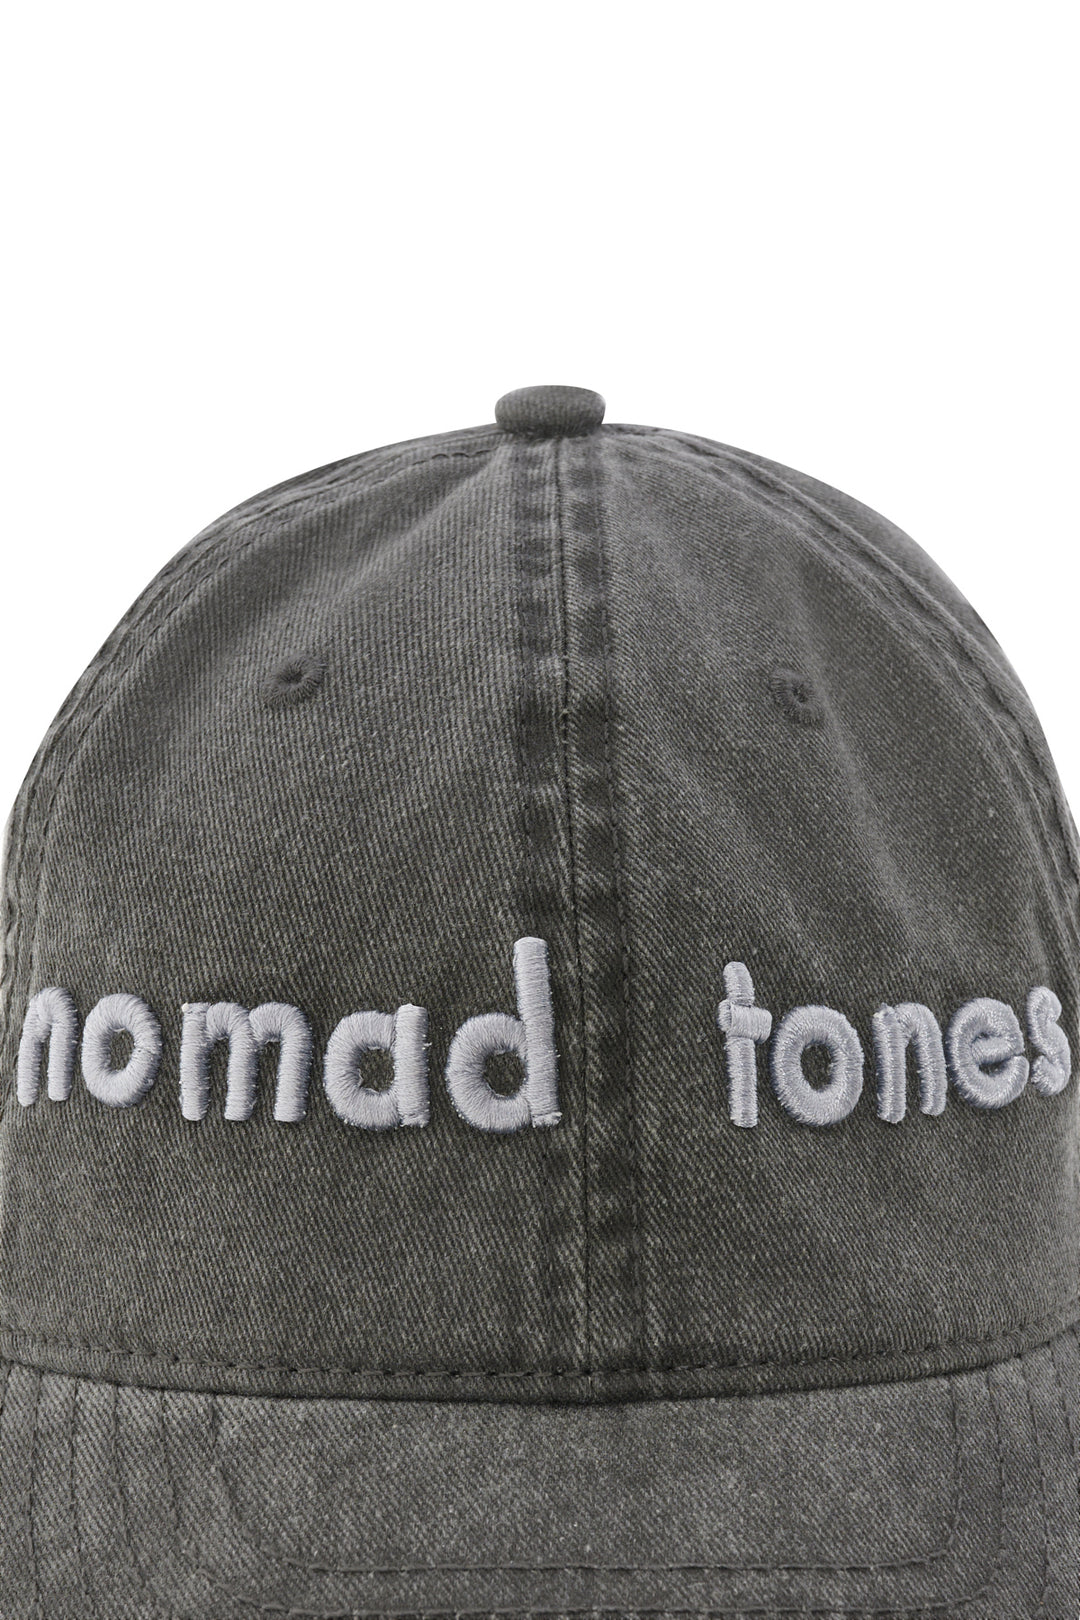 Nomad Tones Cap